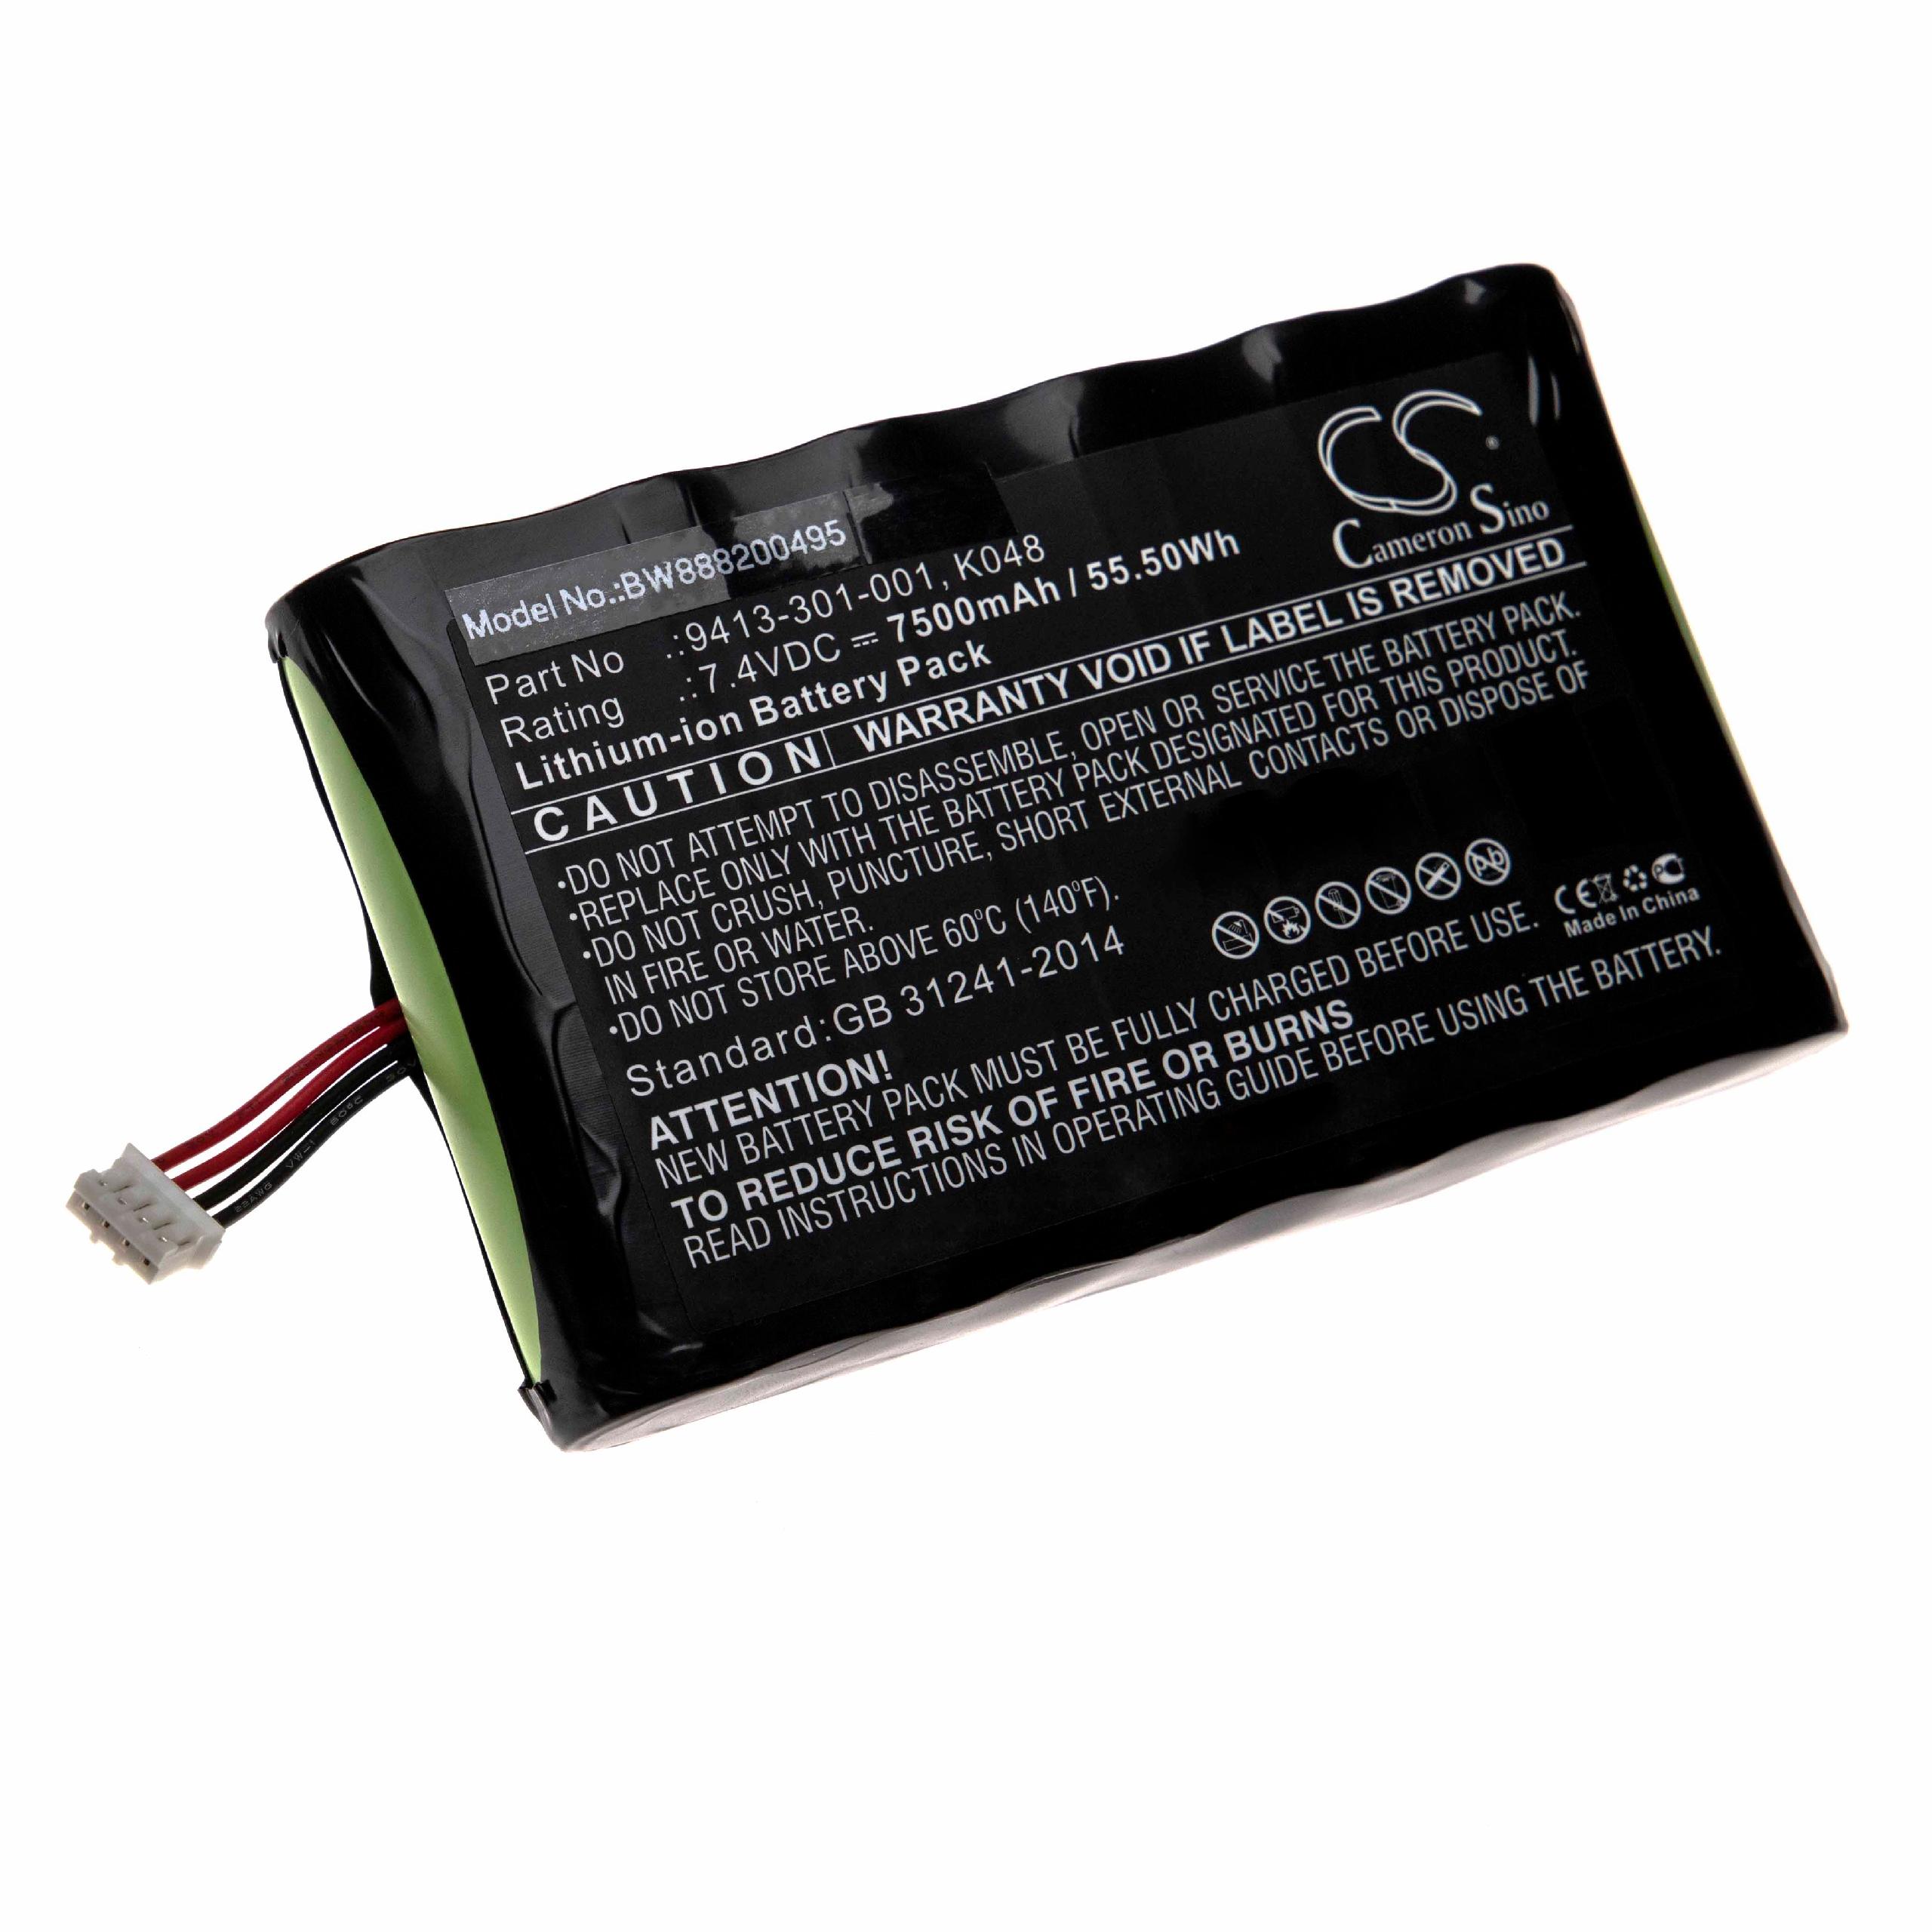 Batterie remplace Peli K048, 9413-301-001 pour lampe de poche - 7500mAh 7,4V Li-ion